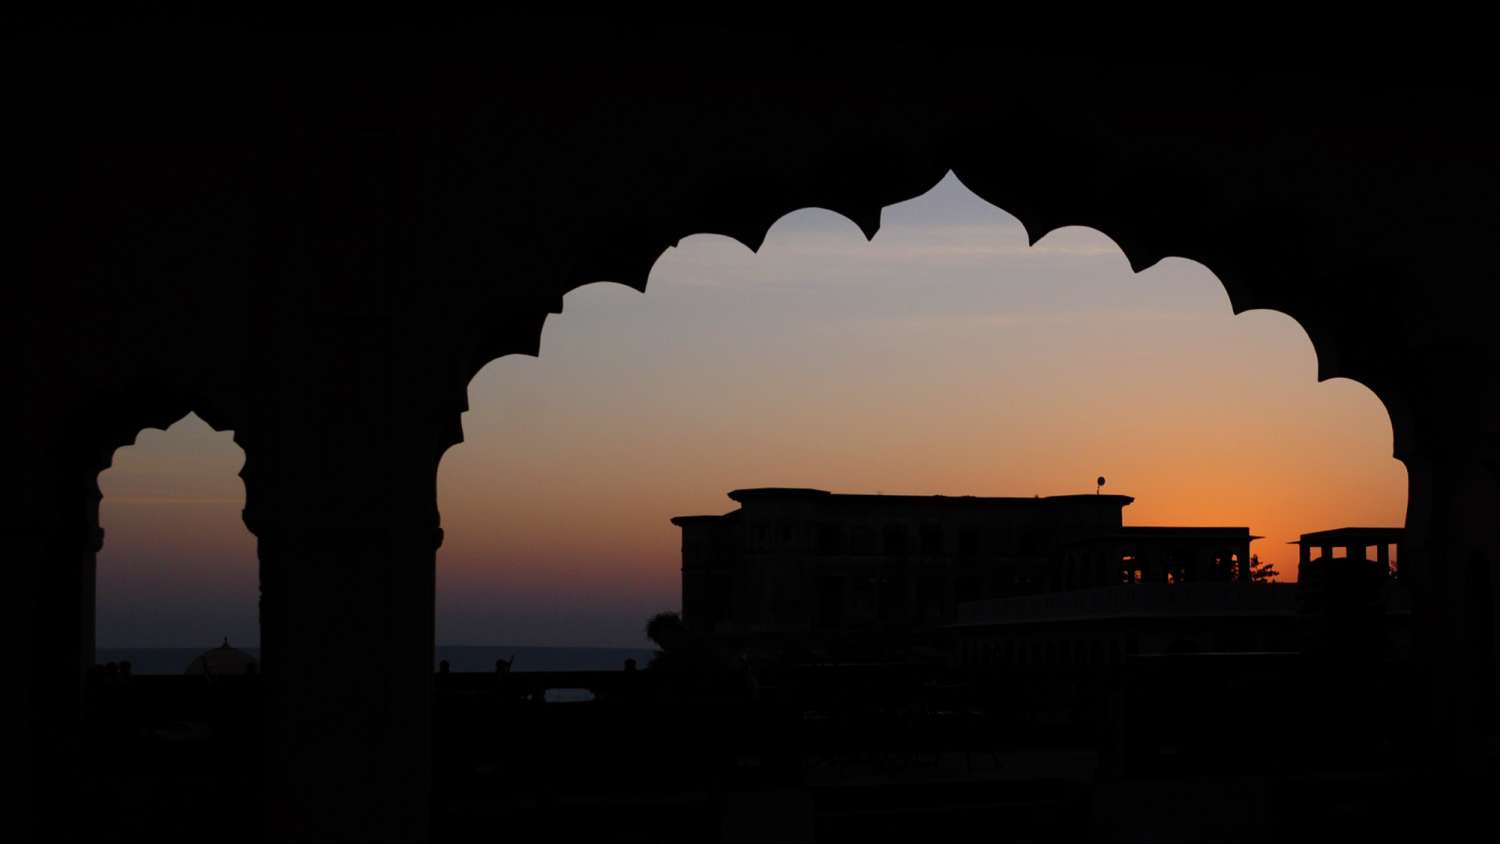 gwalior fort wallpaper galerie,himmel,licht,wolke,die architektur,silhouette